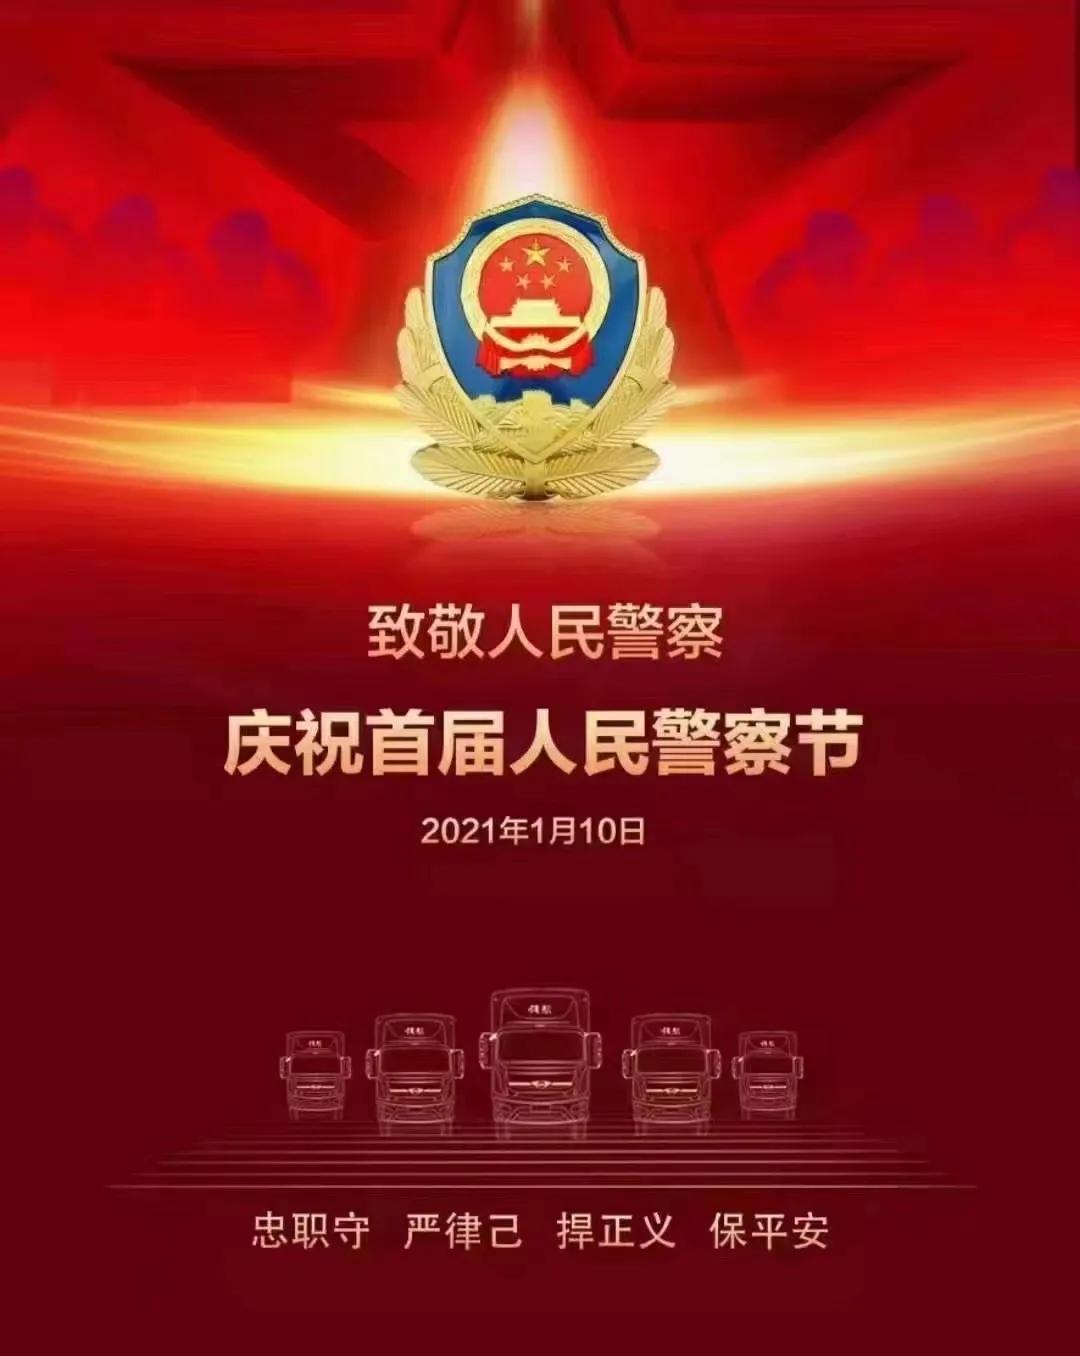 国际警务界向致力于让世界更安全的中国警务等执法人员致敬